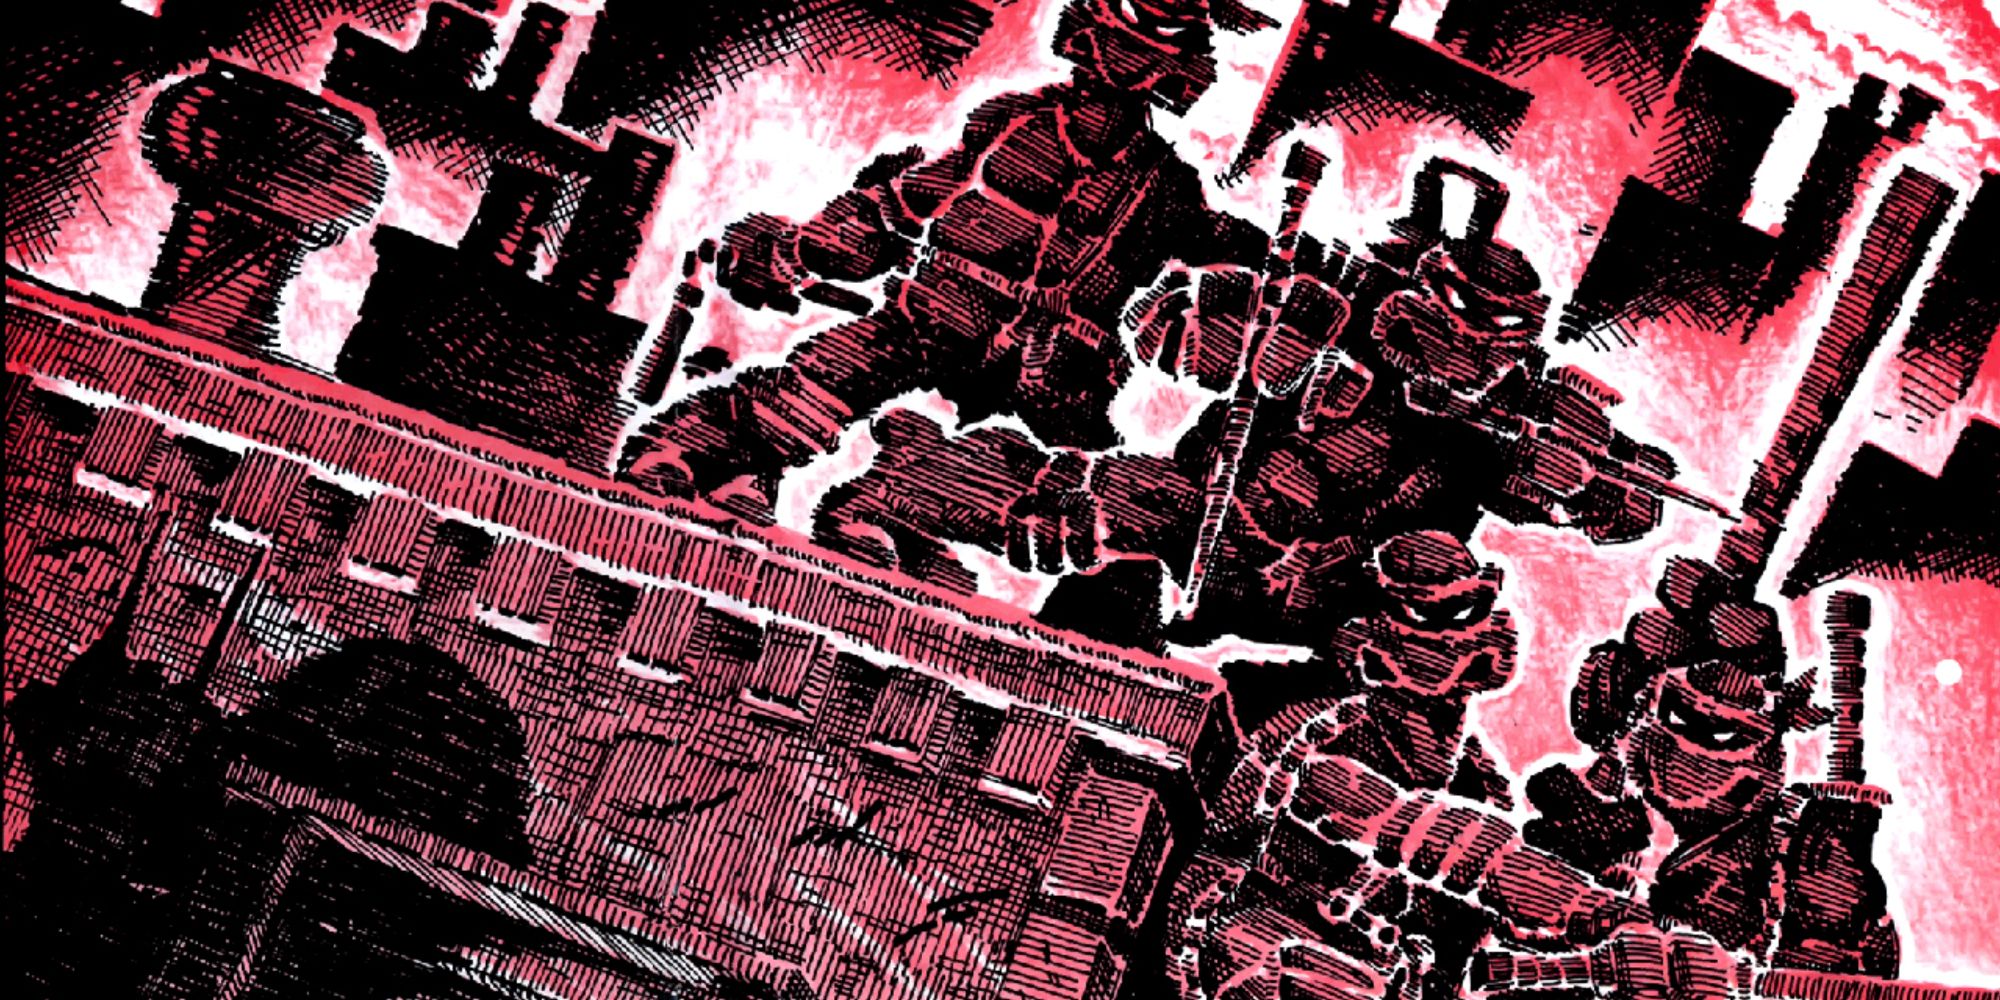 Teenage Mutant Ninja Turtles appear on the cover of Teenage Mutant Ninja Turtles #1.